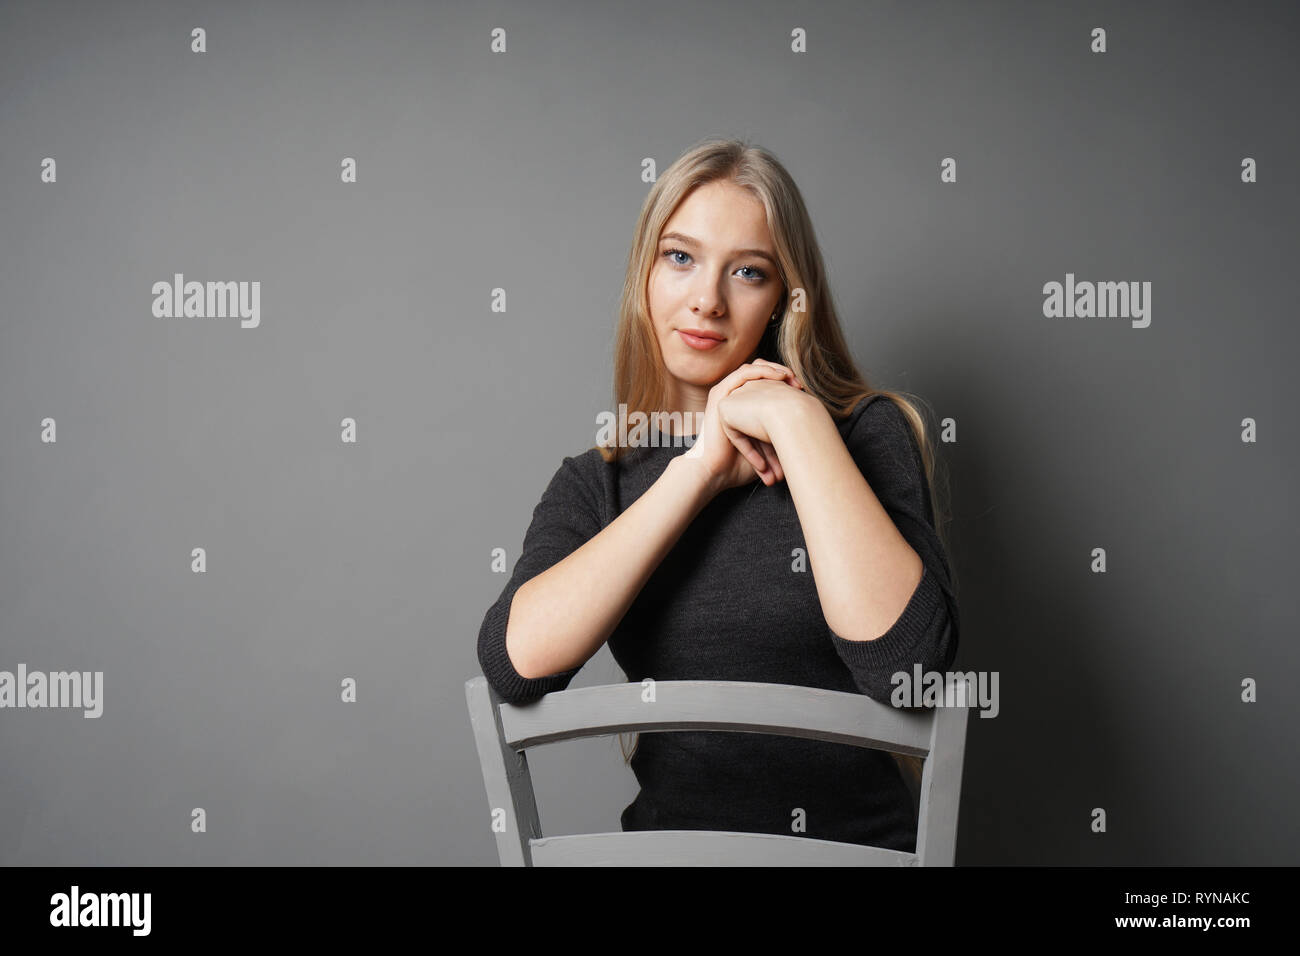 jeune femme sereine assise sur une chaise Banque D'Images